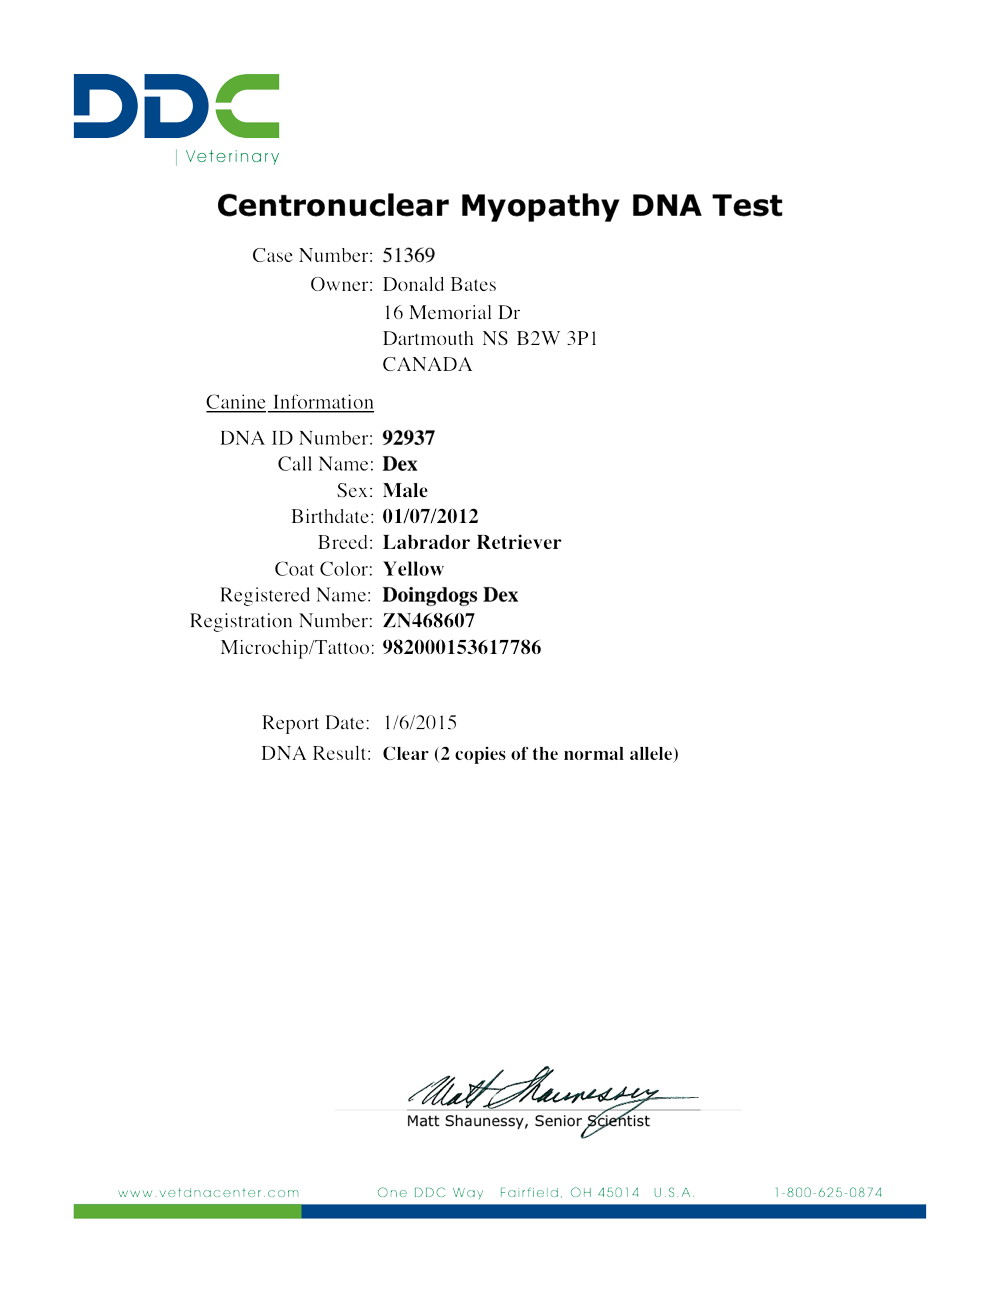 Dex's Centronuclear Myopathy DNA Test